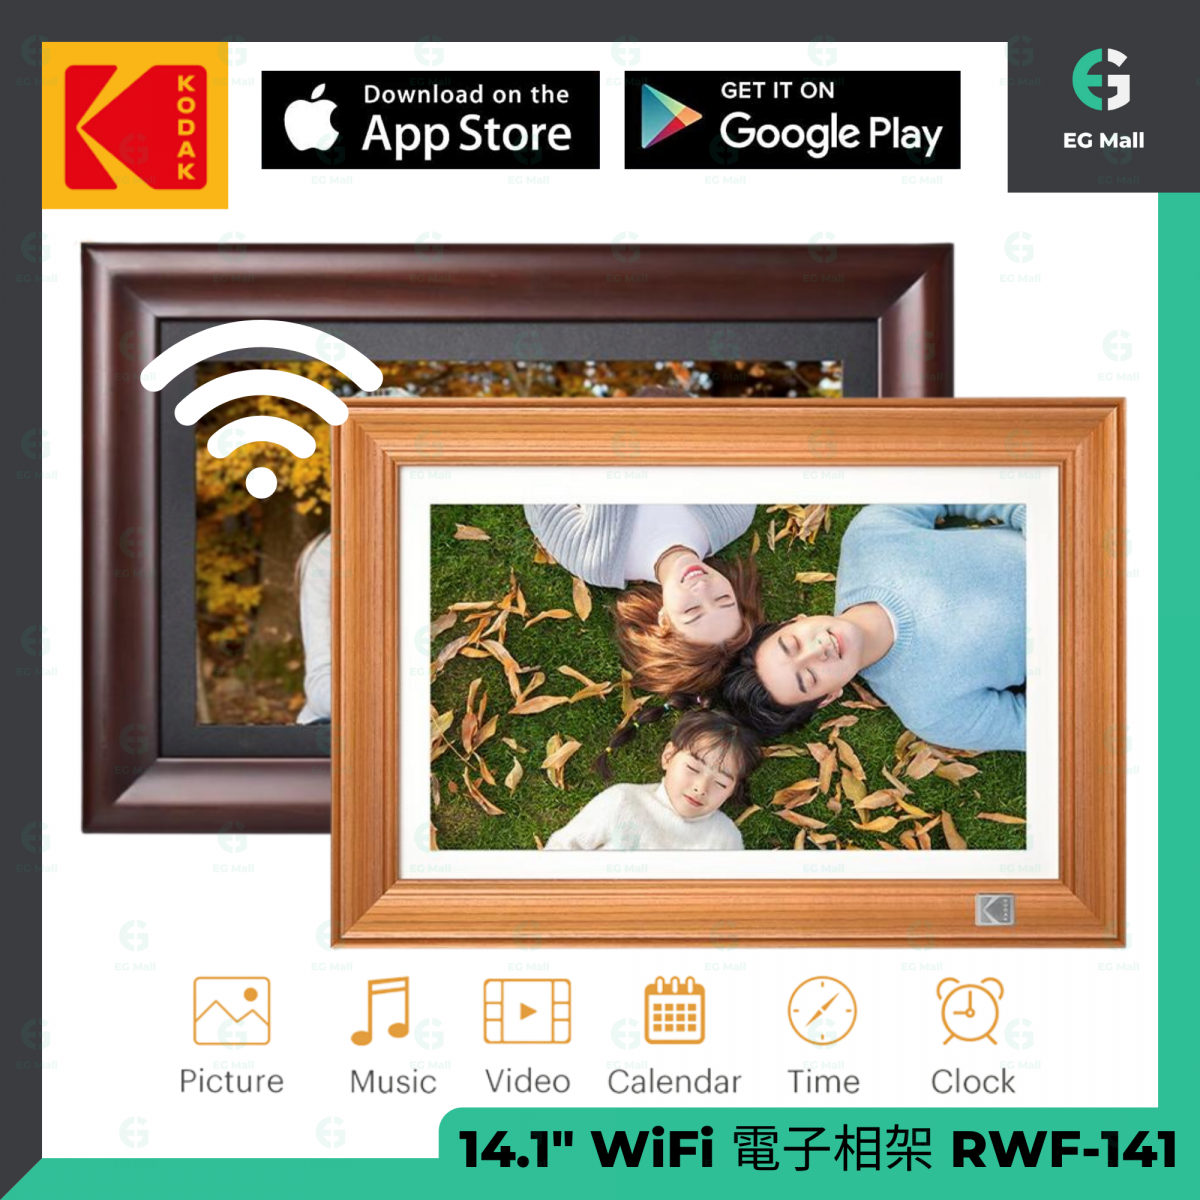 RWF-141 Wifi 數碼電子相架 14.1 英寸 觸摸屏 照片 音樂 視頻 日曆 時鐘 鬧鐘 WiFi 32GB 天氣預報